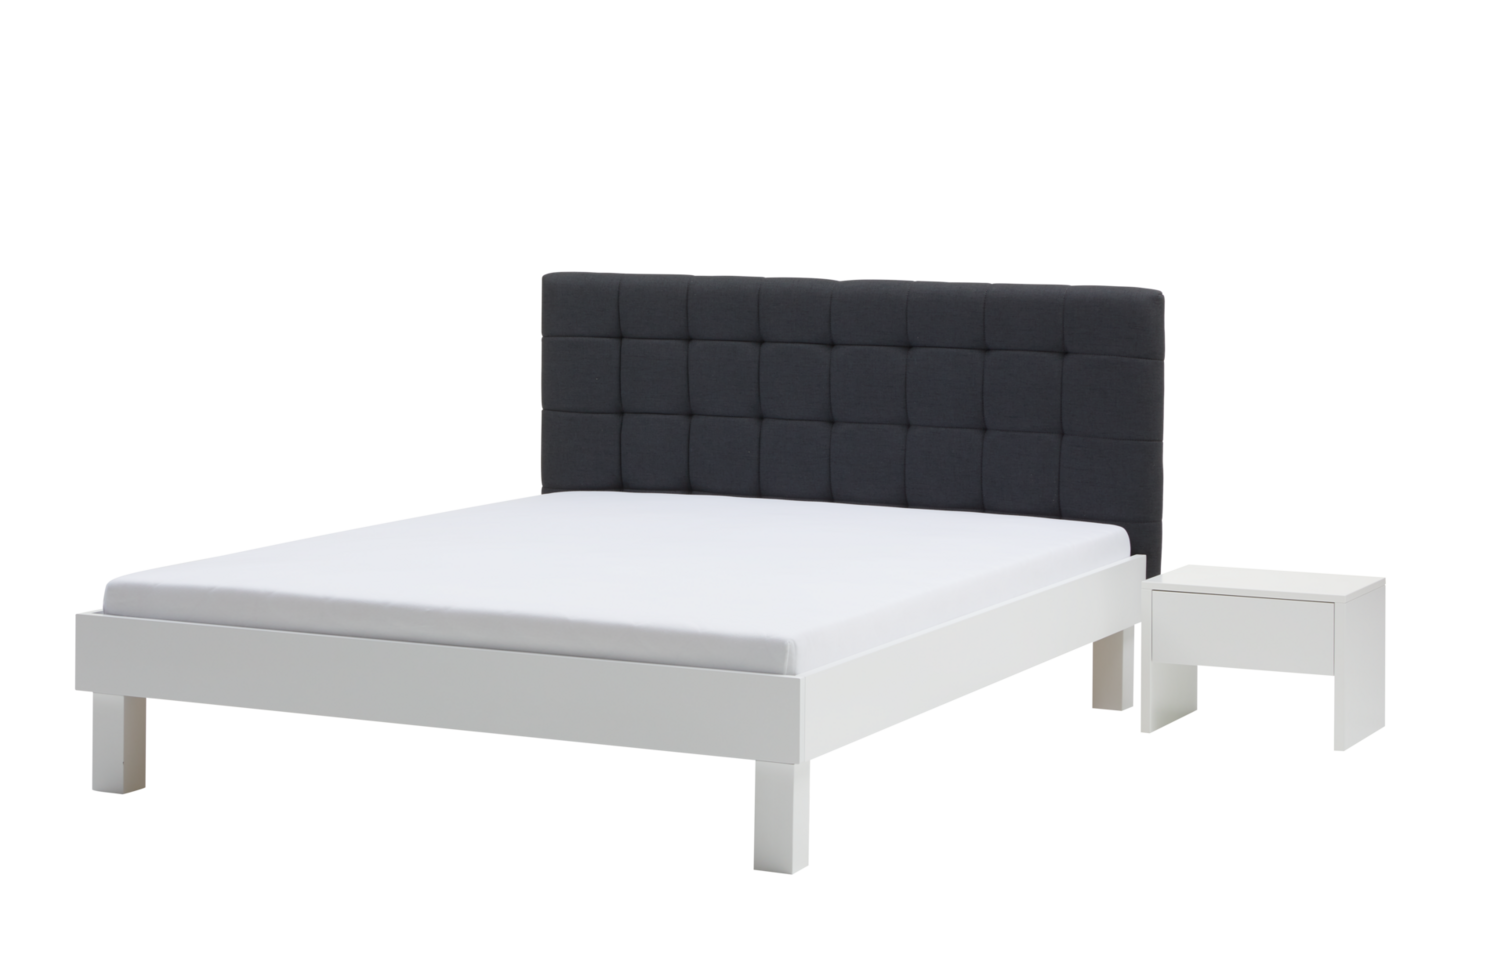 wit houten bed met matras besnoeiing uit, geïsoleerd transparant achtergrond png